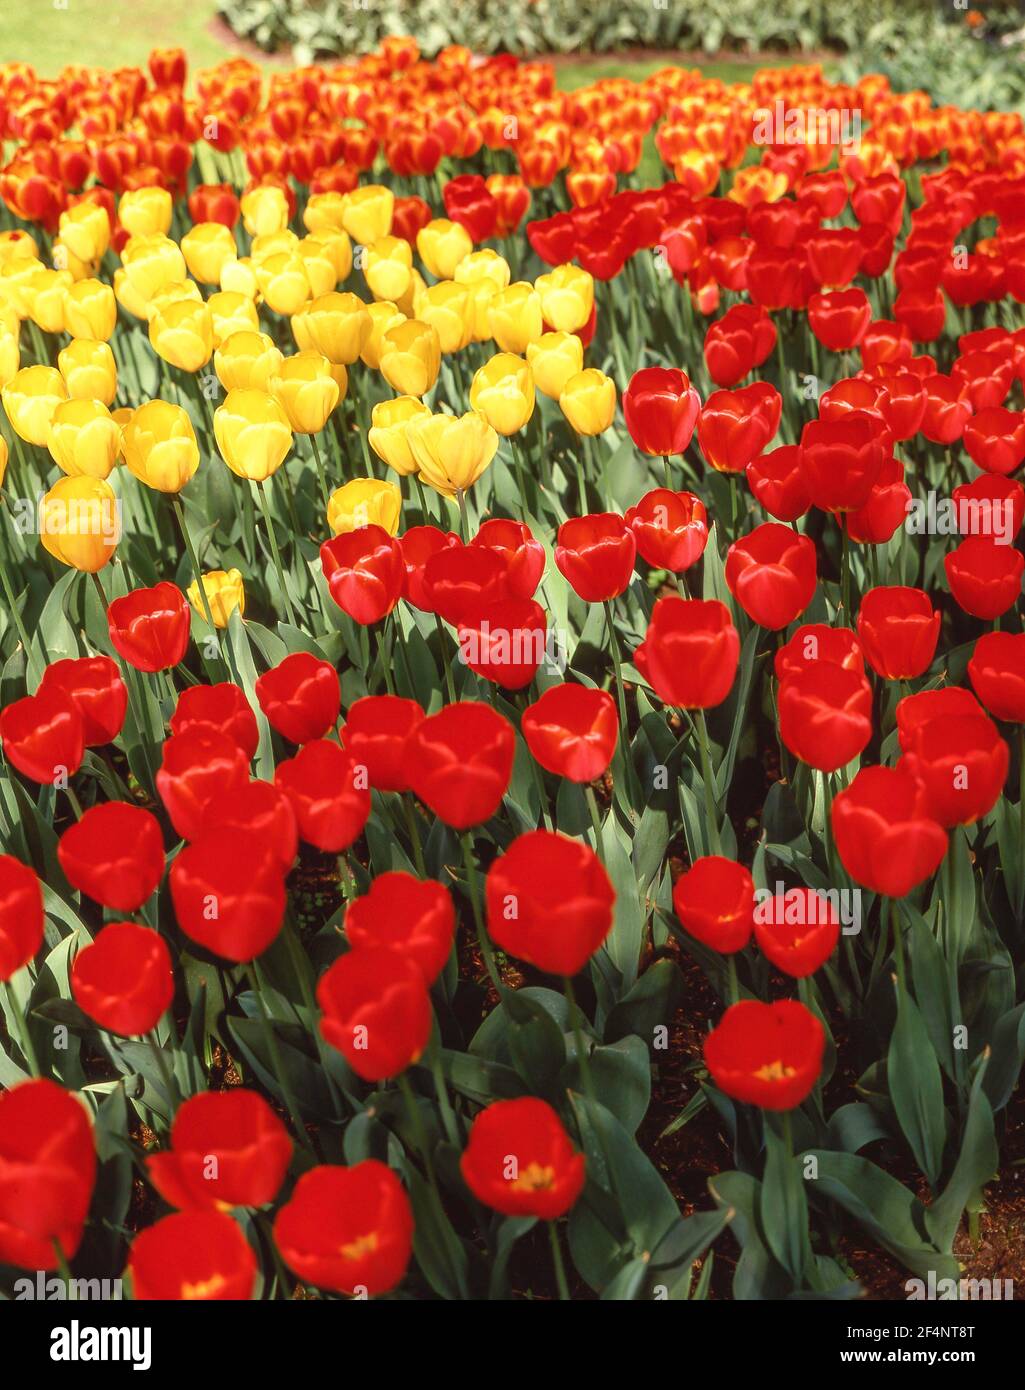 Campi di tulipani in primavera, Giardini Keukenhof, Lisse, Olanda del Sud (Zuid-Holland), Regno dei Paesi Bassi Foto Stock